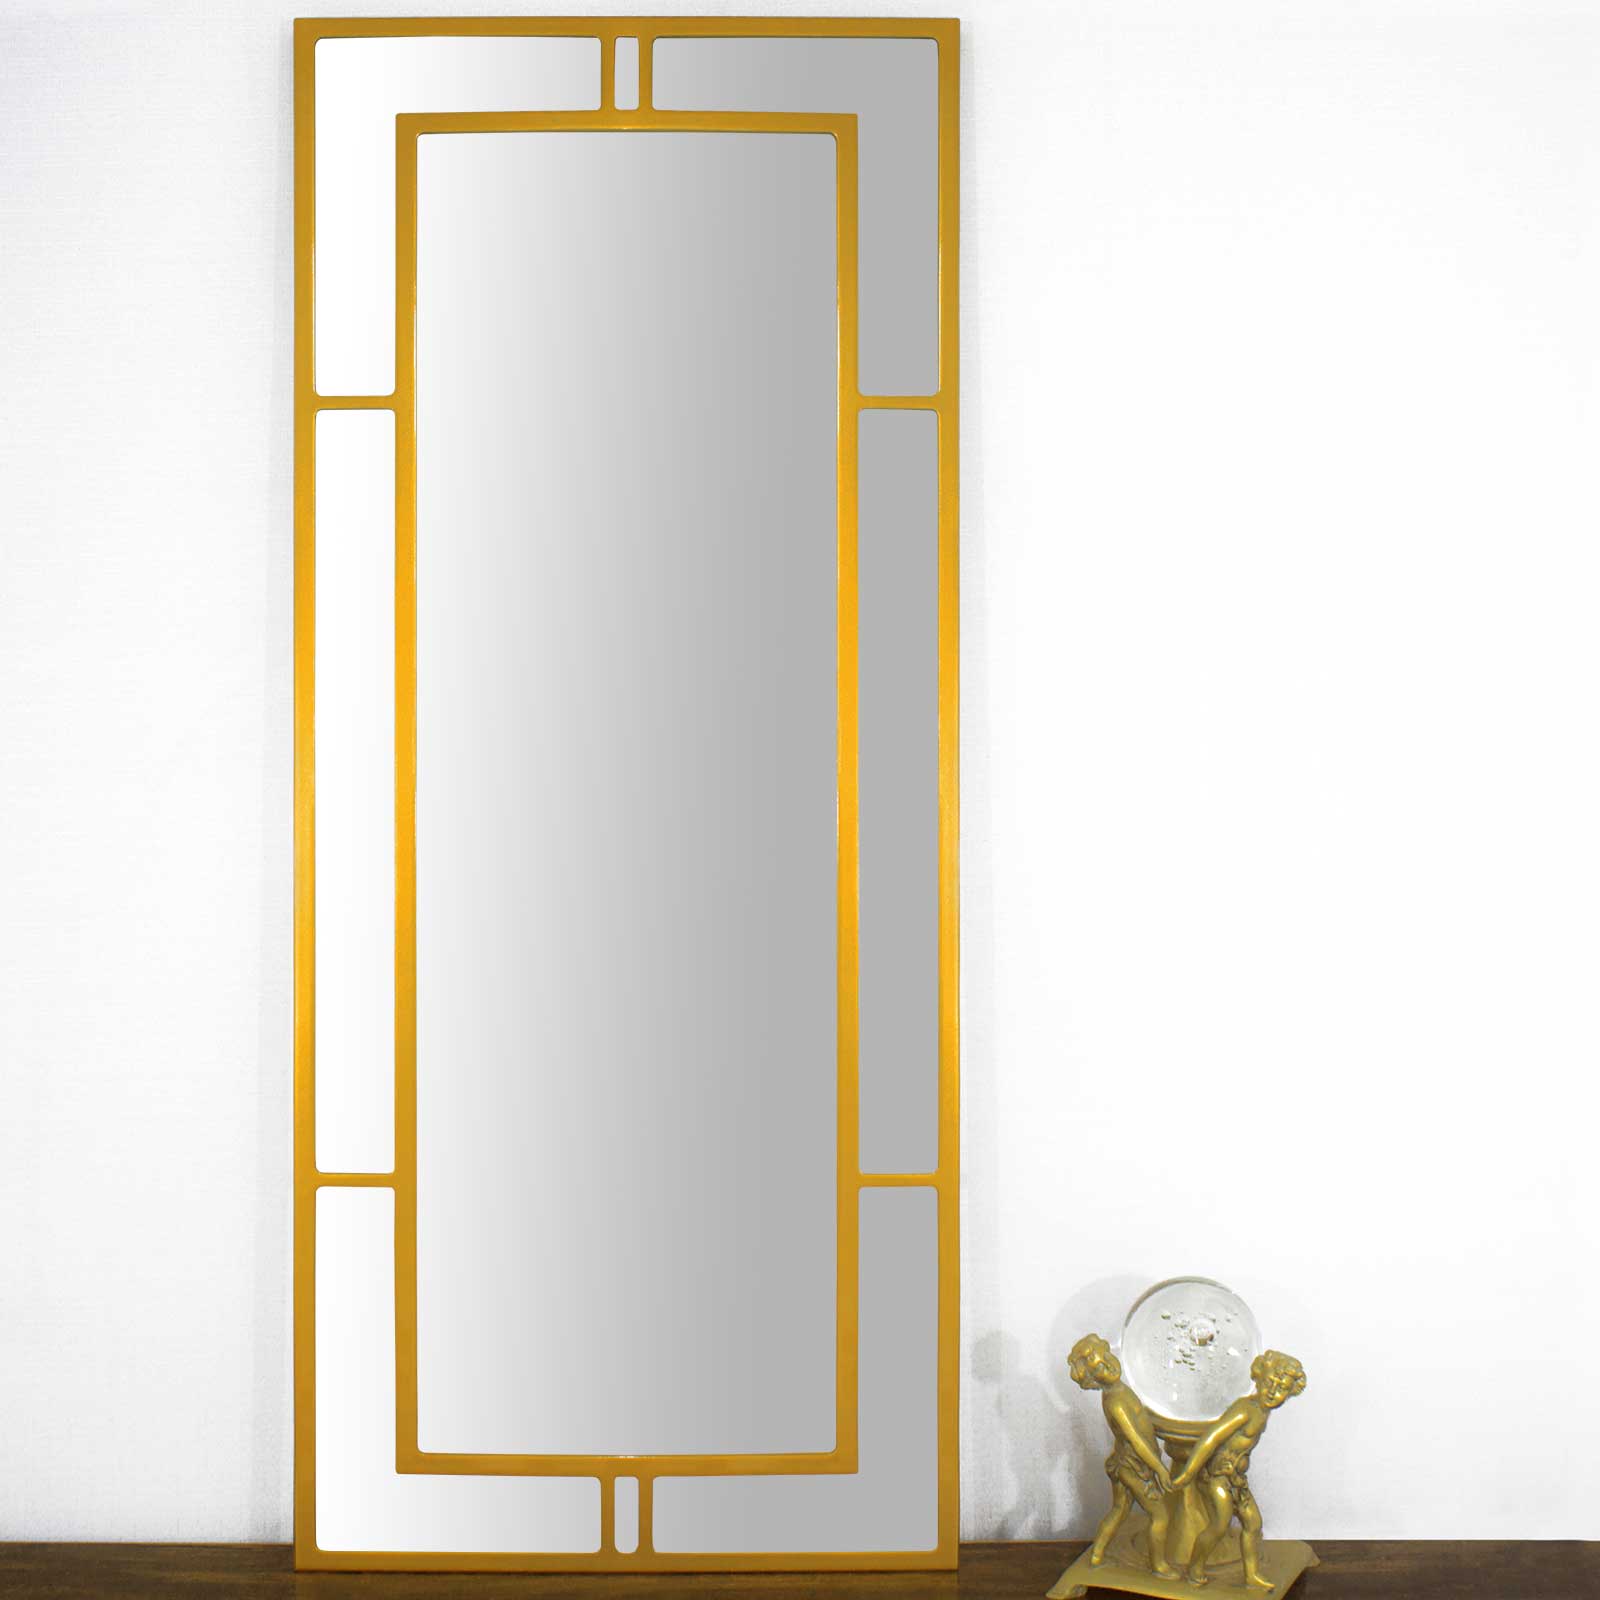 Moldura Grade Mdf Laqueada Dourada Brilho para Espelhos Vrias Medidas